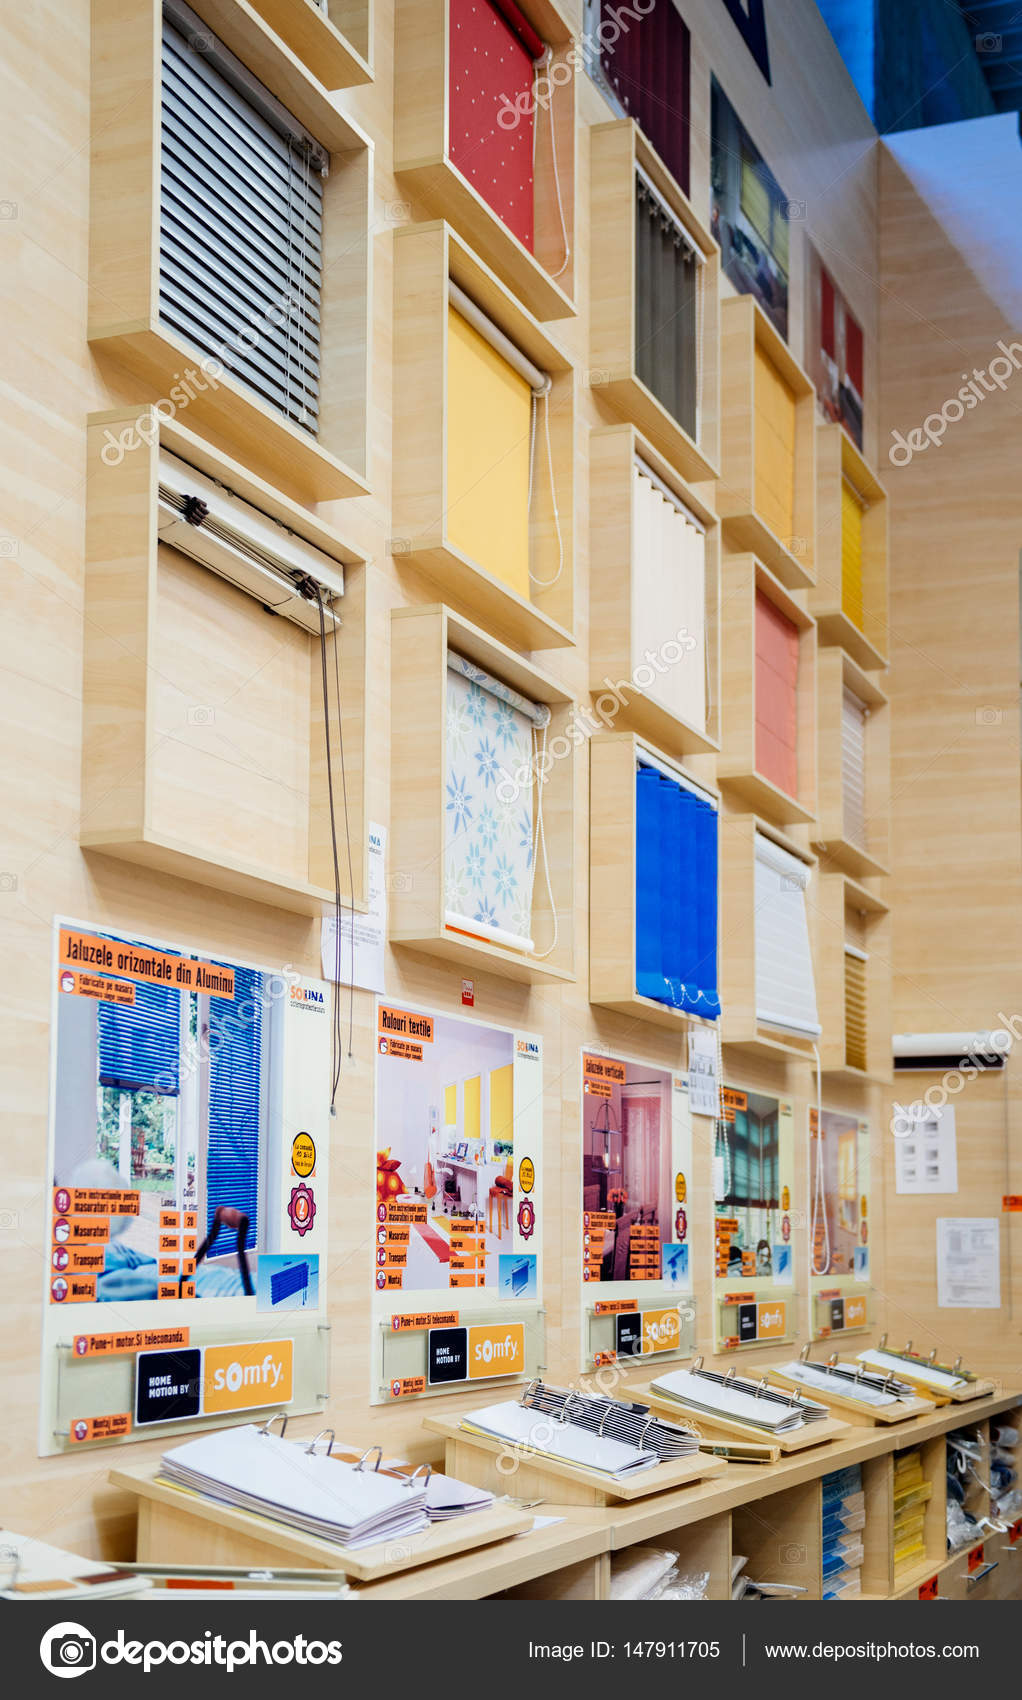 Persianas de Windows la tienda de Foto editorial de stock ifeelstock #147911705